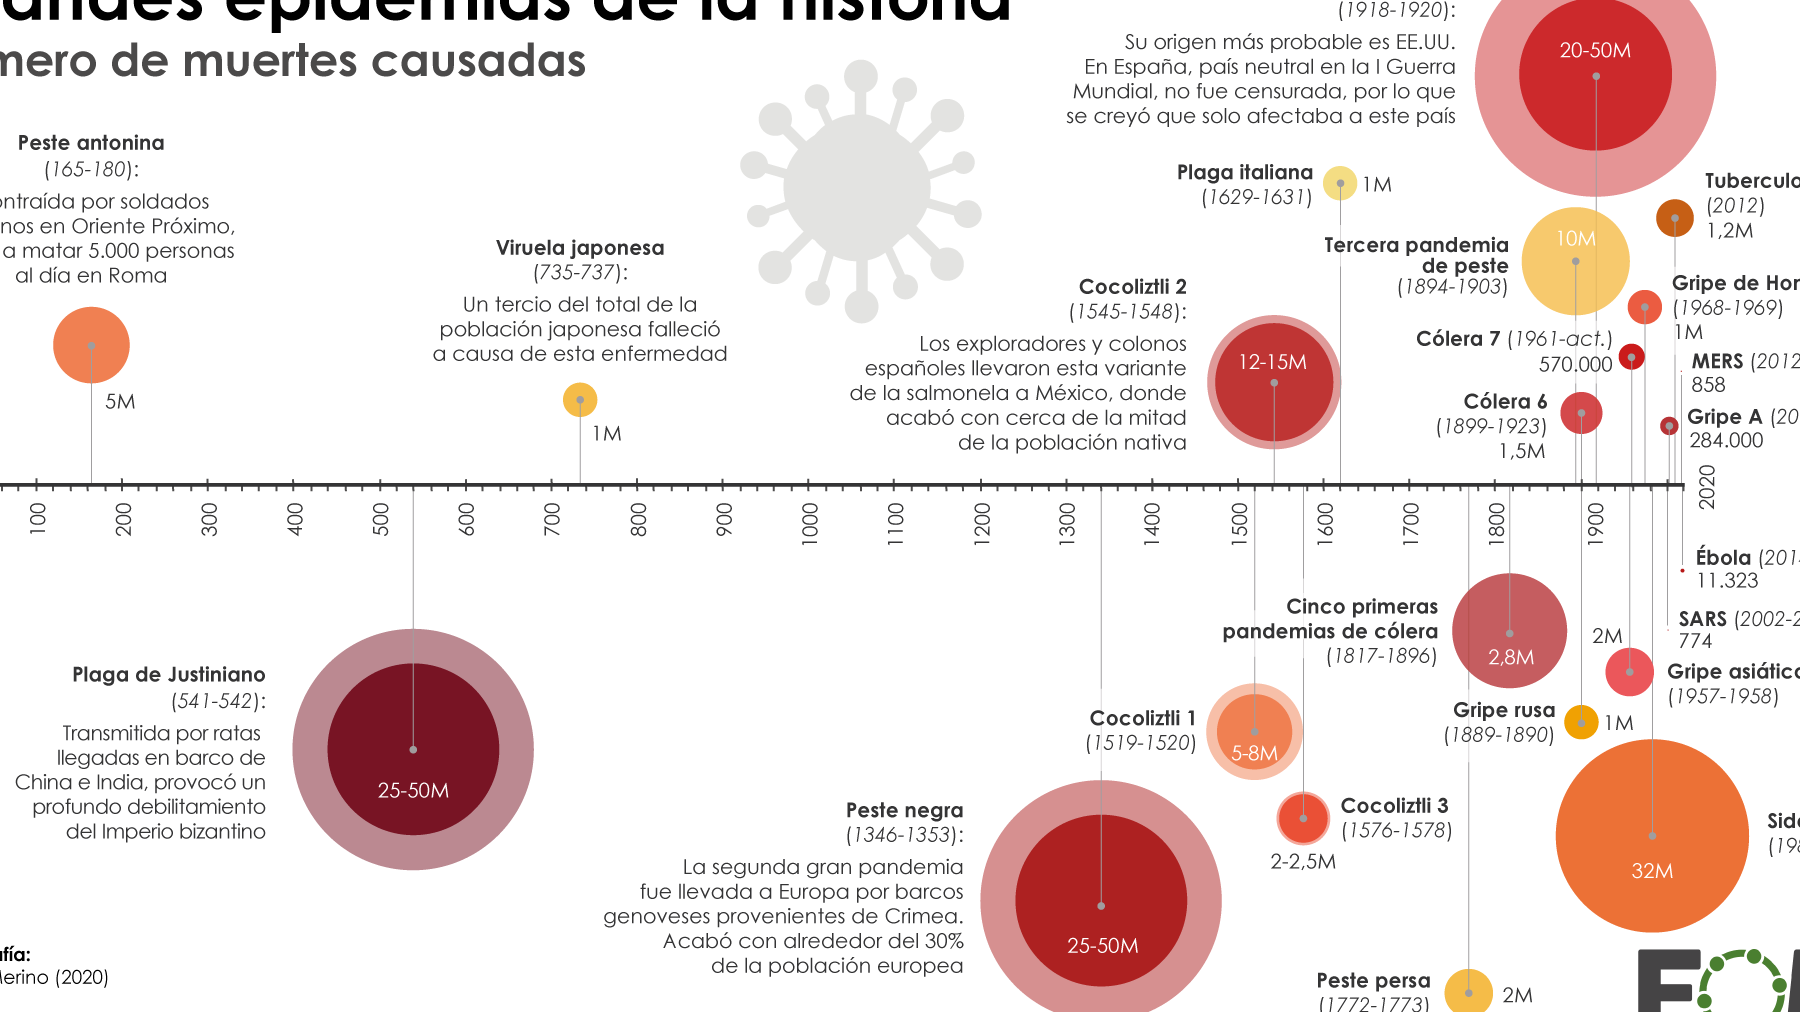 20 ejemplos de epidemias y pandemias en la historia